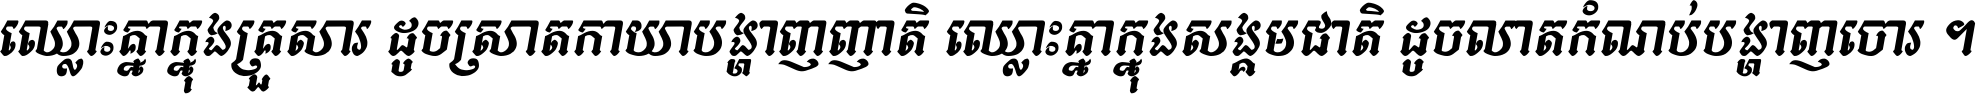 Kh Baphnom Pheaktra Italic